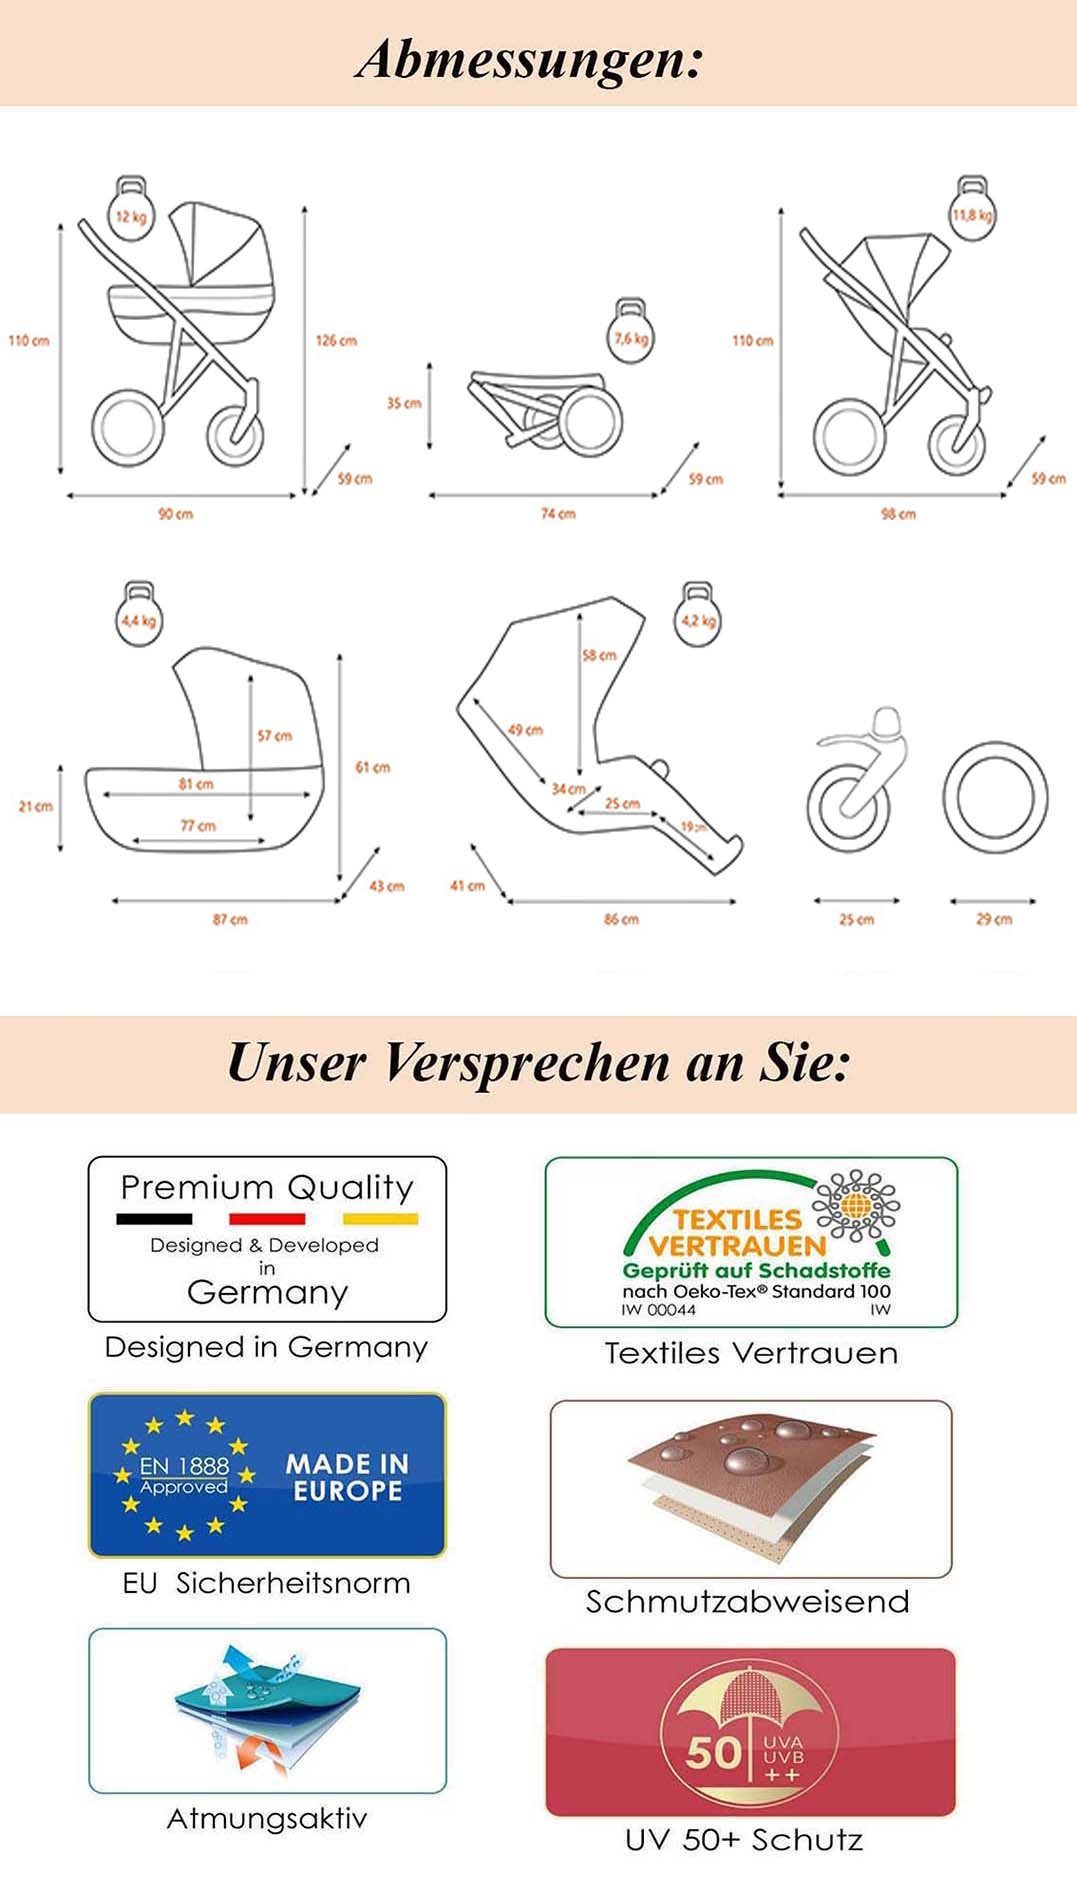 babies-on-wheels Kombi-Kinderwagen Molto 1 Teile- Schwarz Jahre Geburt bis in Autositz -13 Edition gold = inkl. 3 4 Gestell von